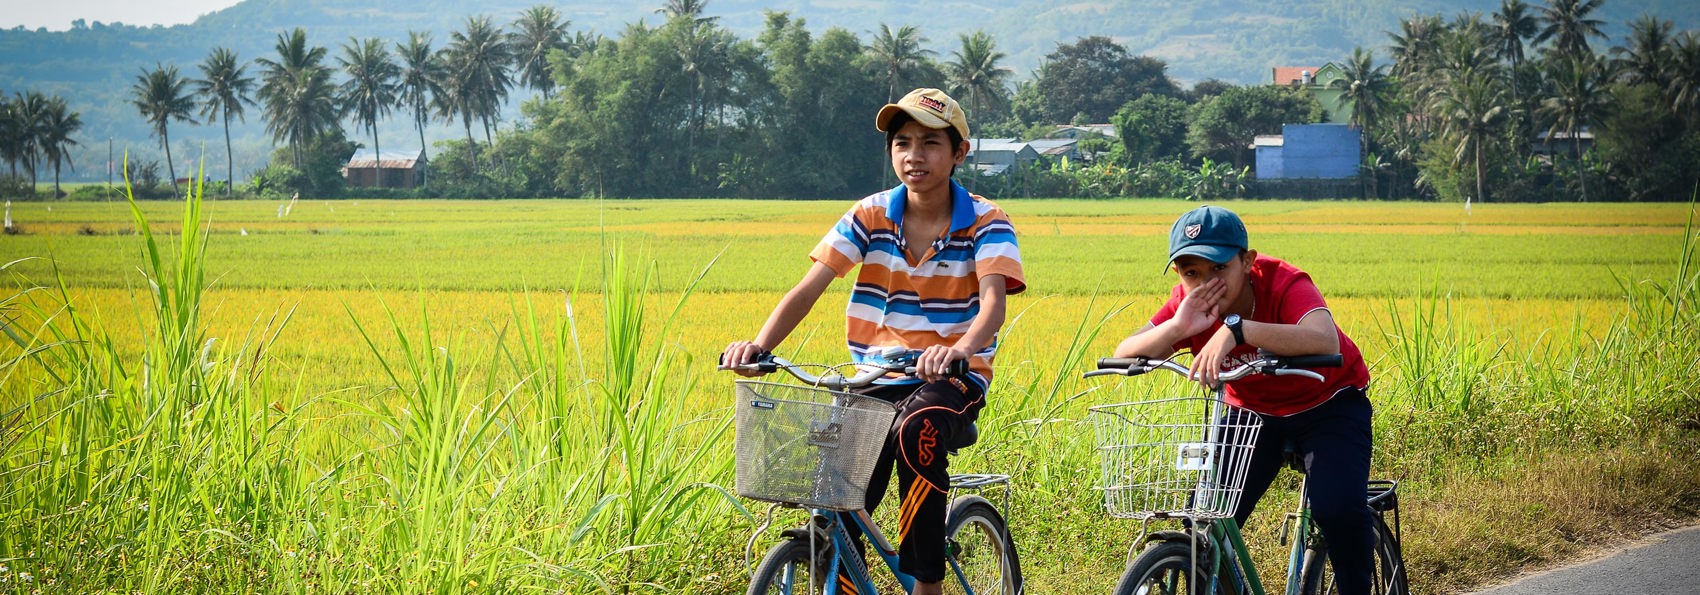 vietnam - mekong delta_befolkning_cykel_03